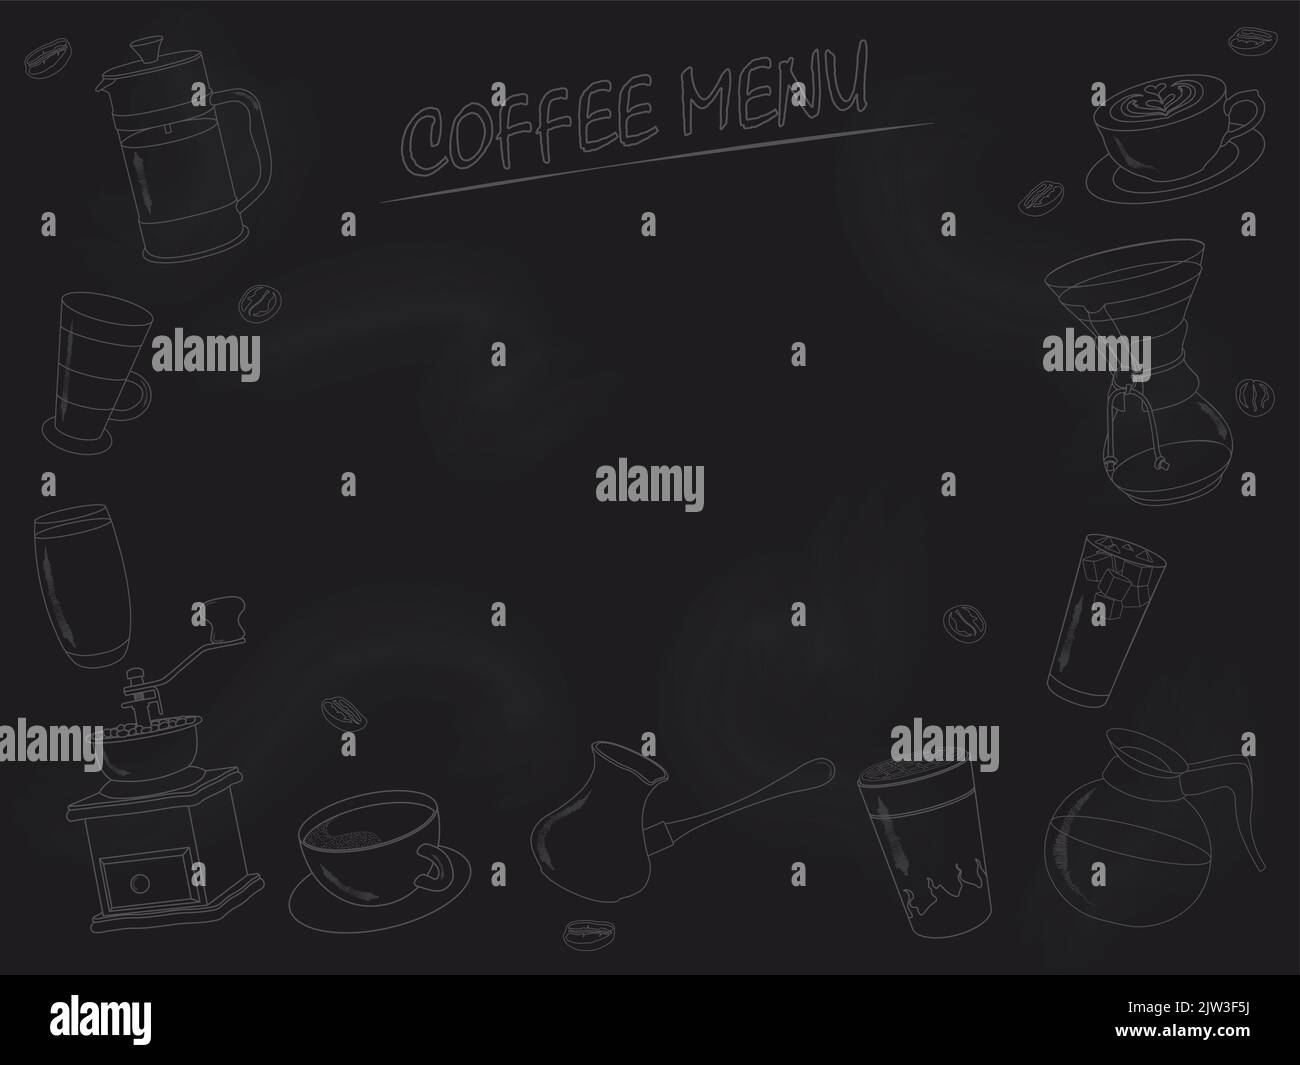 Kaffeegetränke-Menü mit Getränkekonturen und Kopierbereich auf Tafel Vektorgrafik gezeichnet Stock Vektor